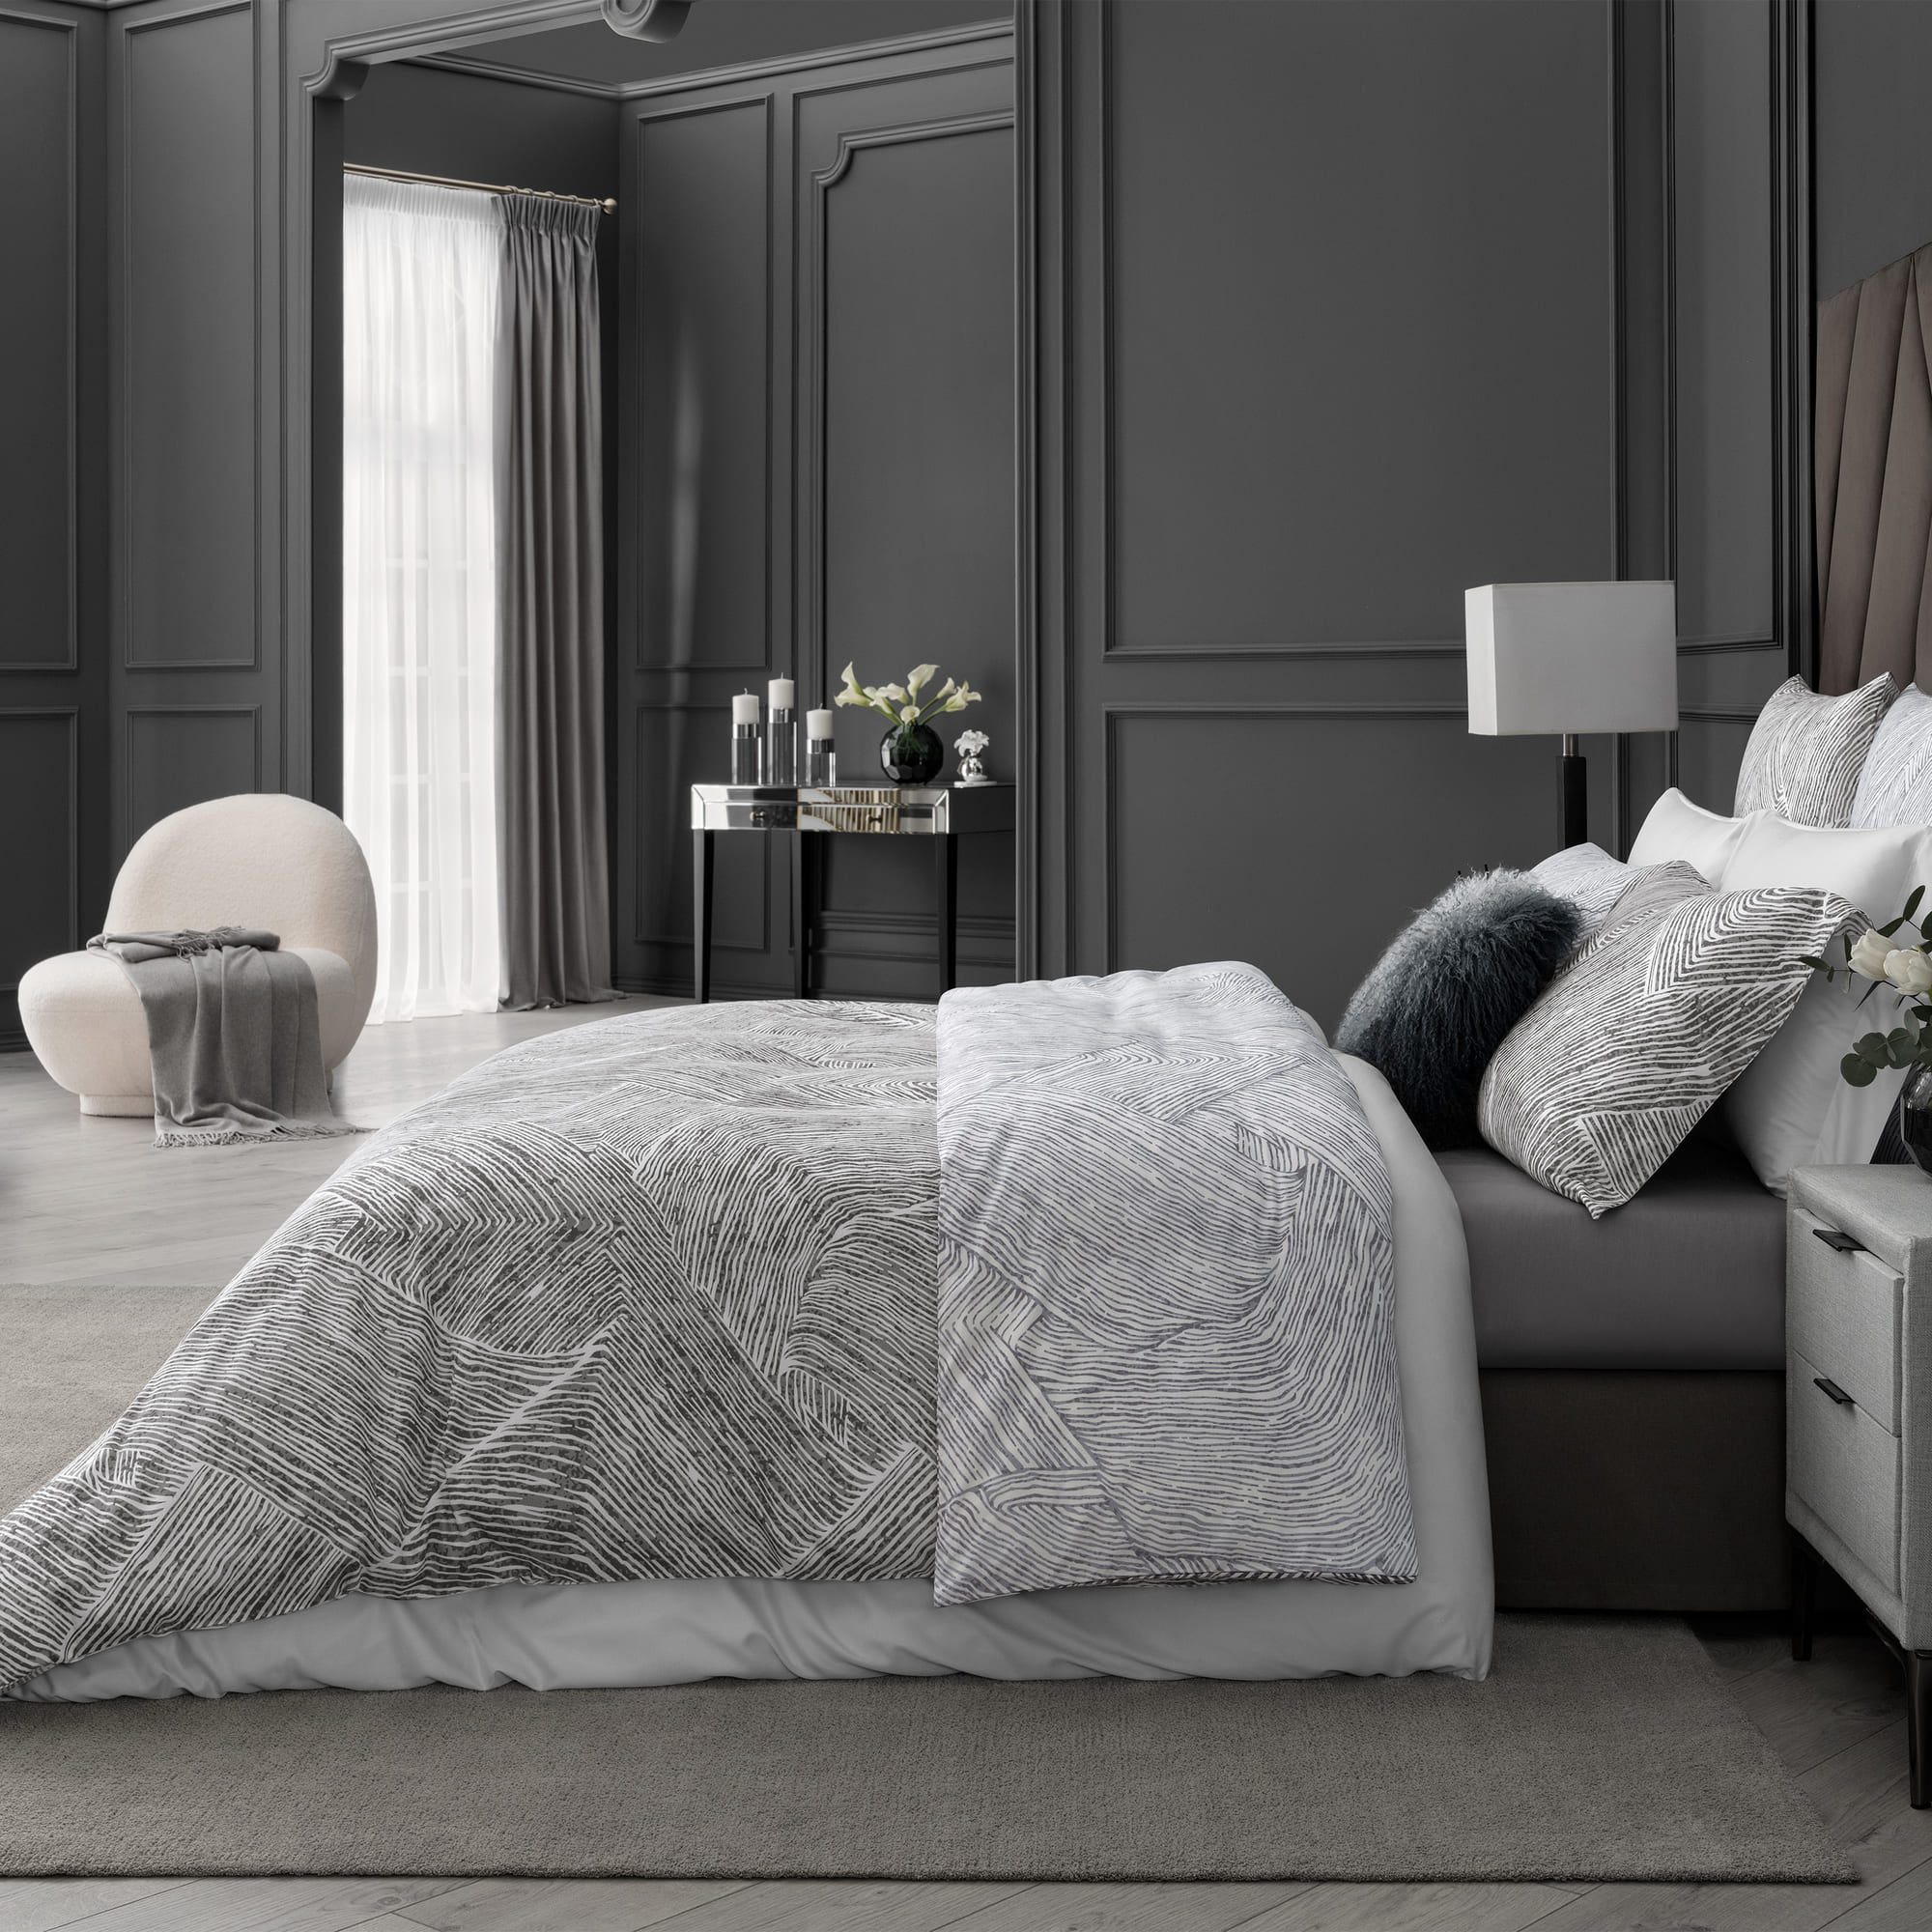 Комплект постельного белья Togas Ферранте серый Двуспальный кинг сайз, размер Кинг сайз - фото 3